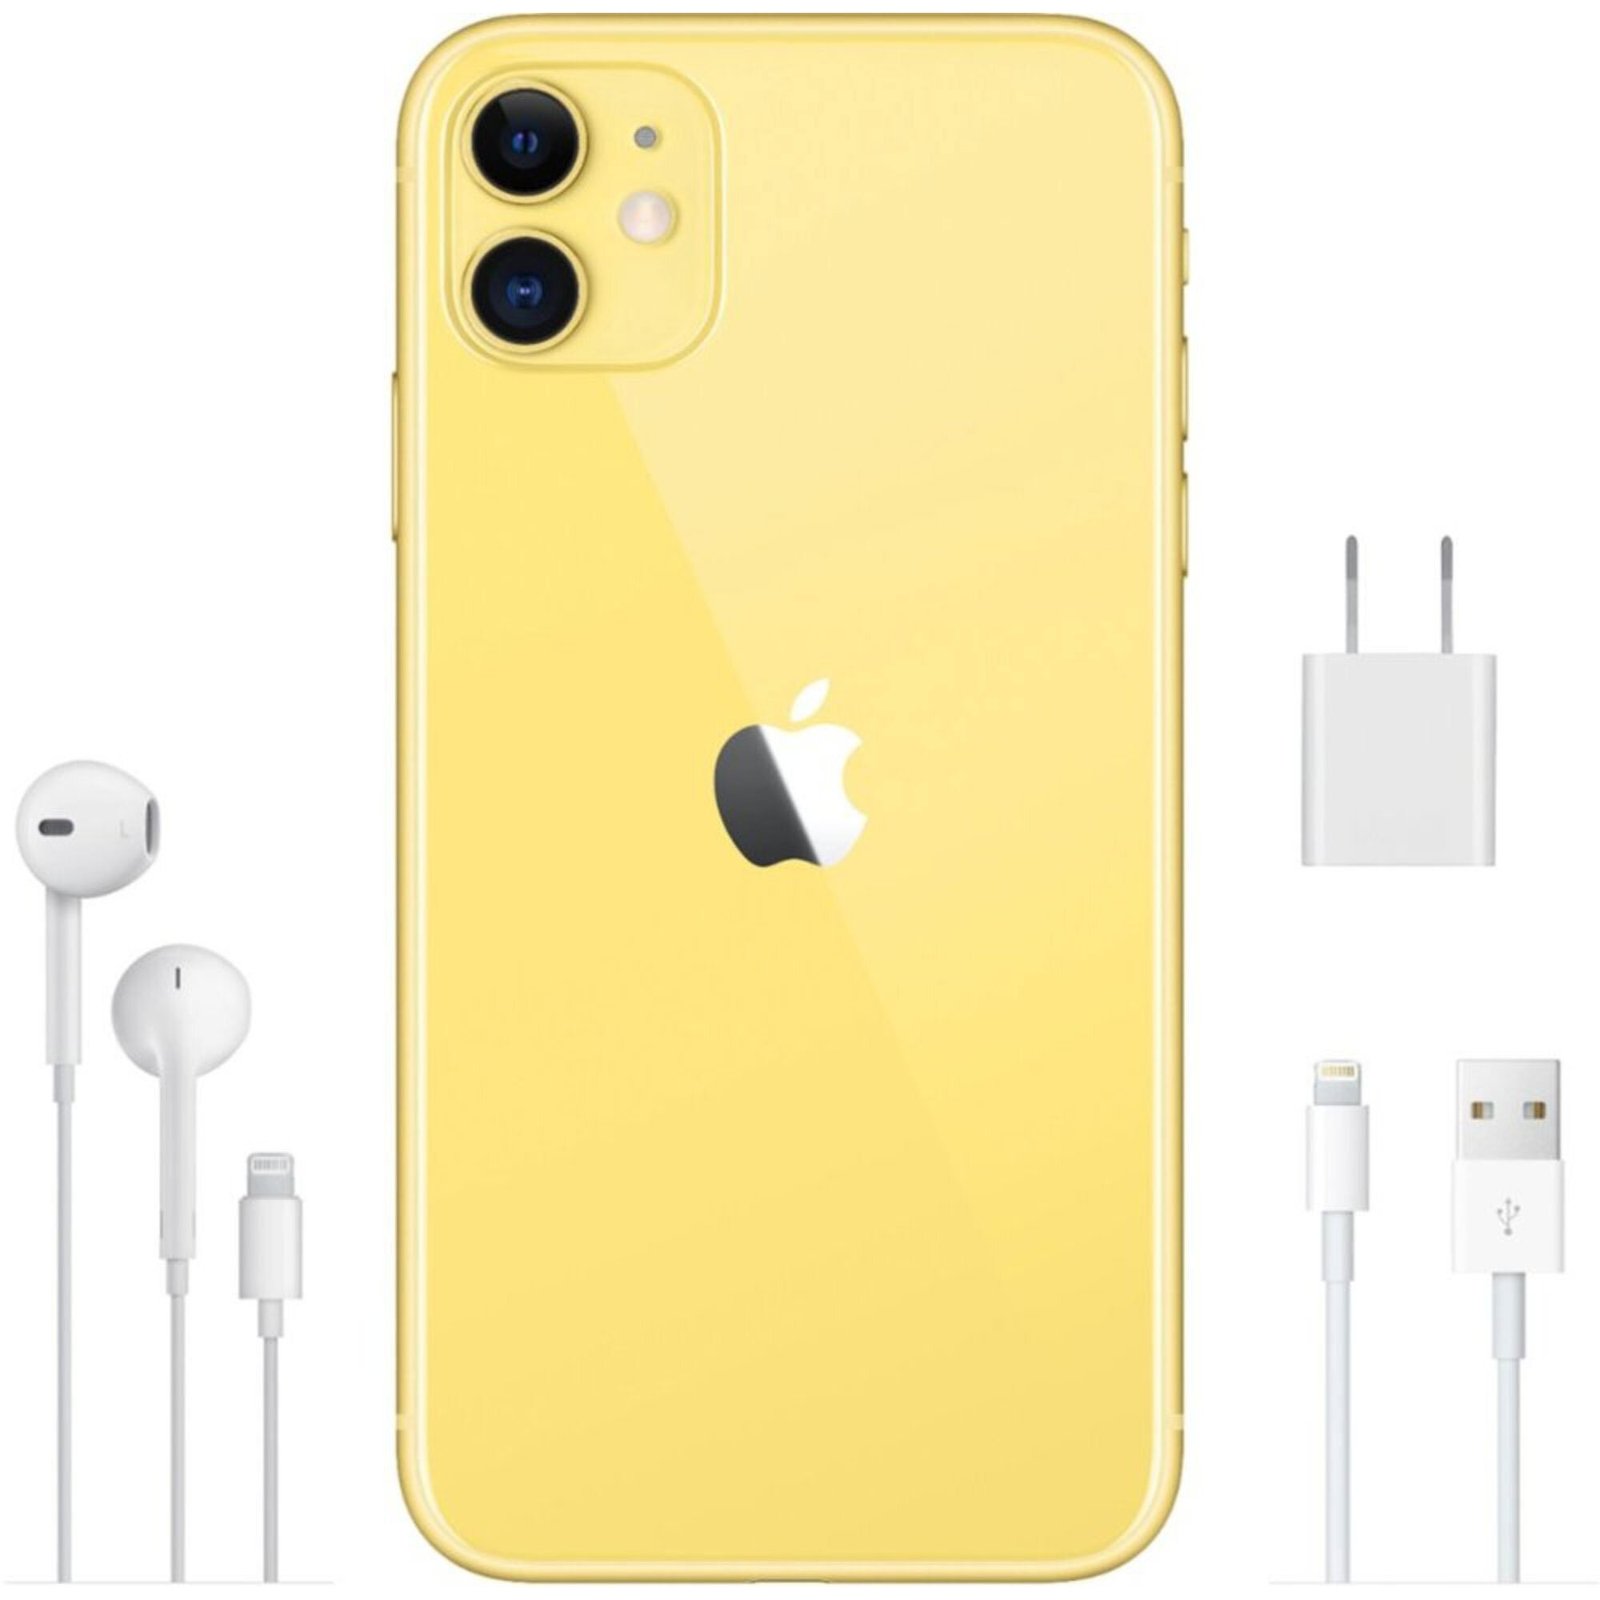 高評価新作Apple iPhone11 64GB Yellow A2221 MWLW2J/A バッテリ88%■SIMフリー(SIMロック解除済)★Joshin3355 iPhone